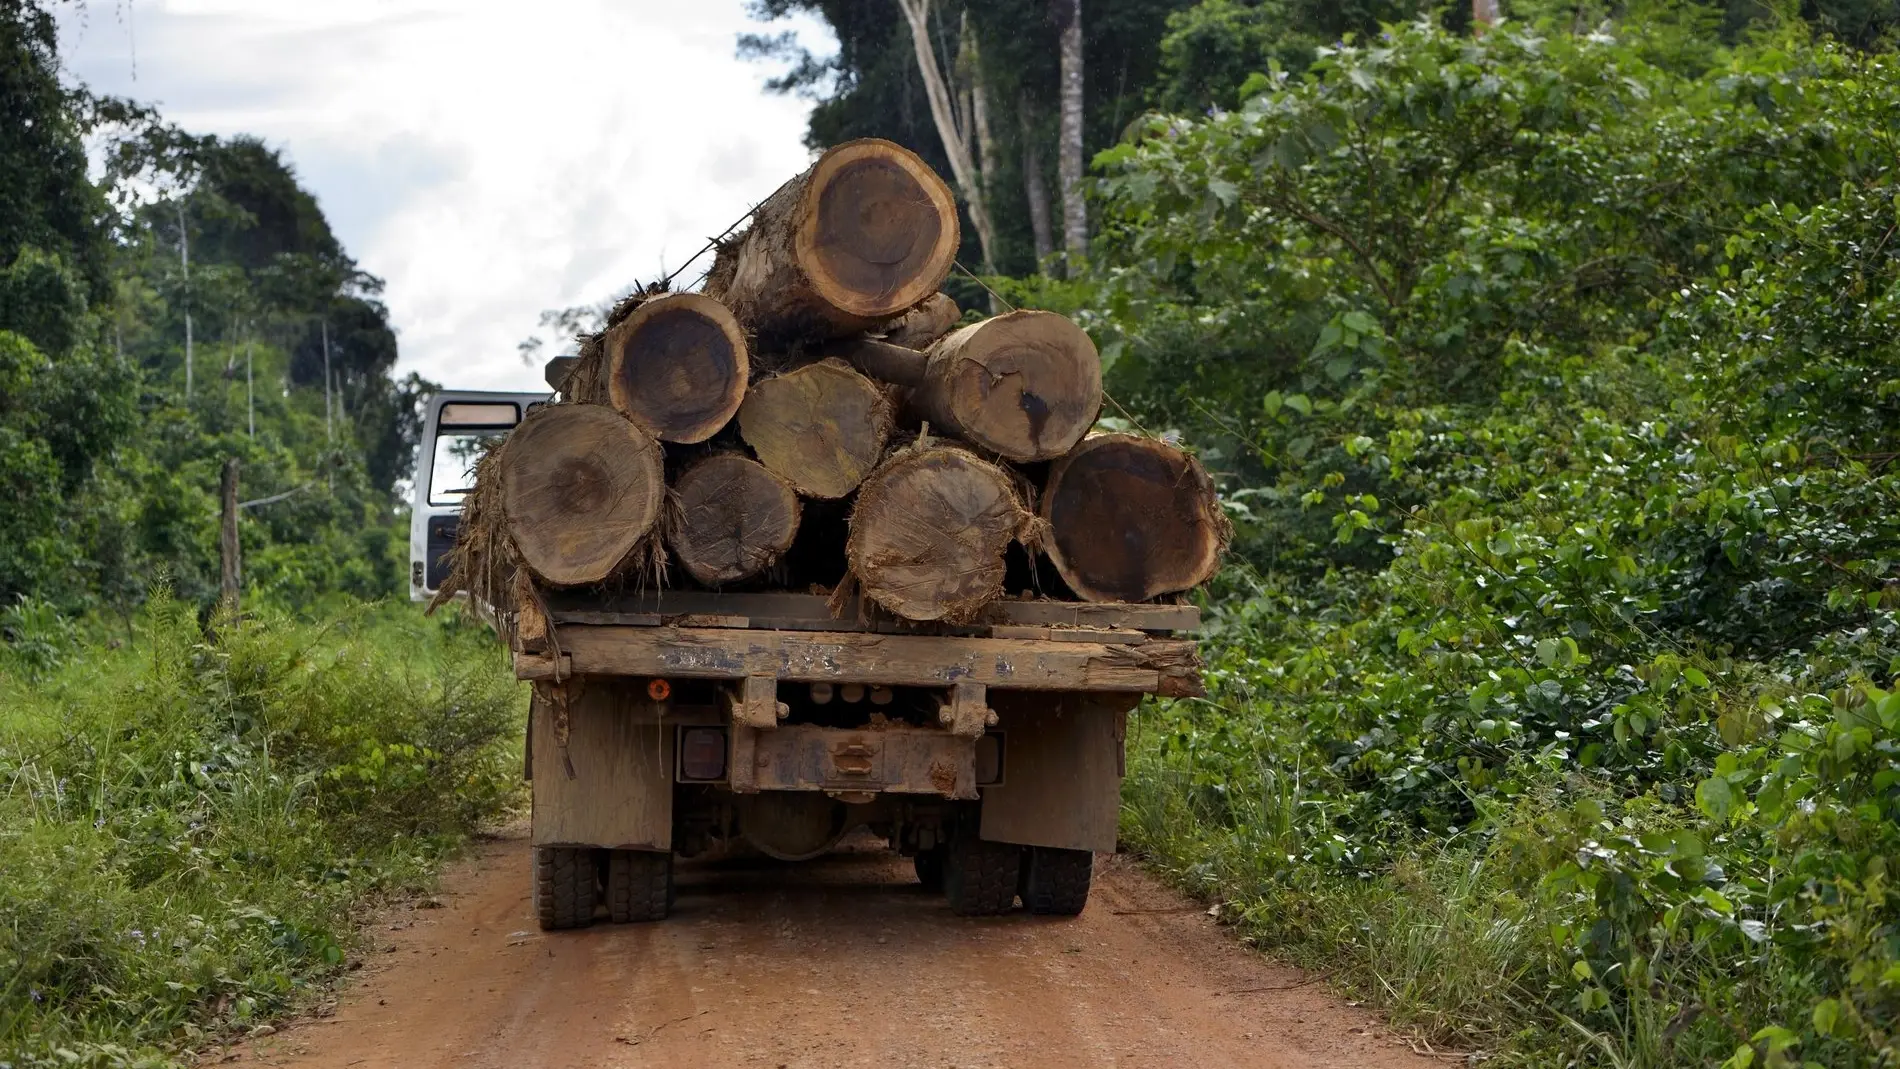 Holzeinschlag im brasilianischen Regenwald.